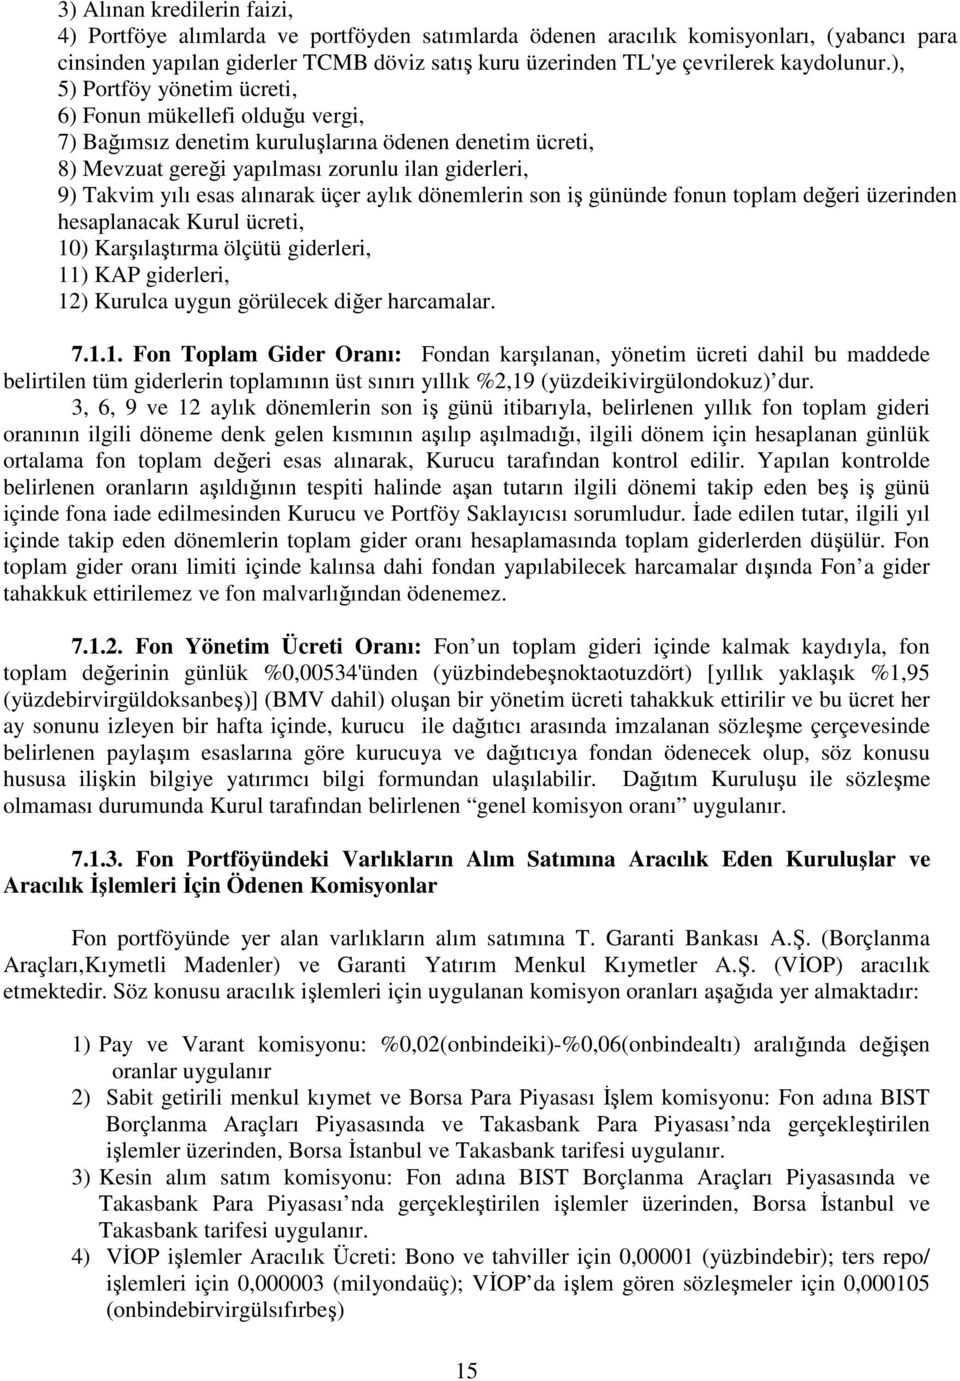 ), 5) Portföy yönetim ücreti, 6) Fonun mükellefi olduğu vergi, 7) Bağımsız denetim kuruluşlarına ödenen denetim ücreti, 8) Mevzuat gereği yapılması zorunlu ilan giderleri, 9) Takvim yılı esas